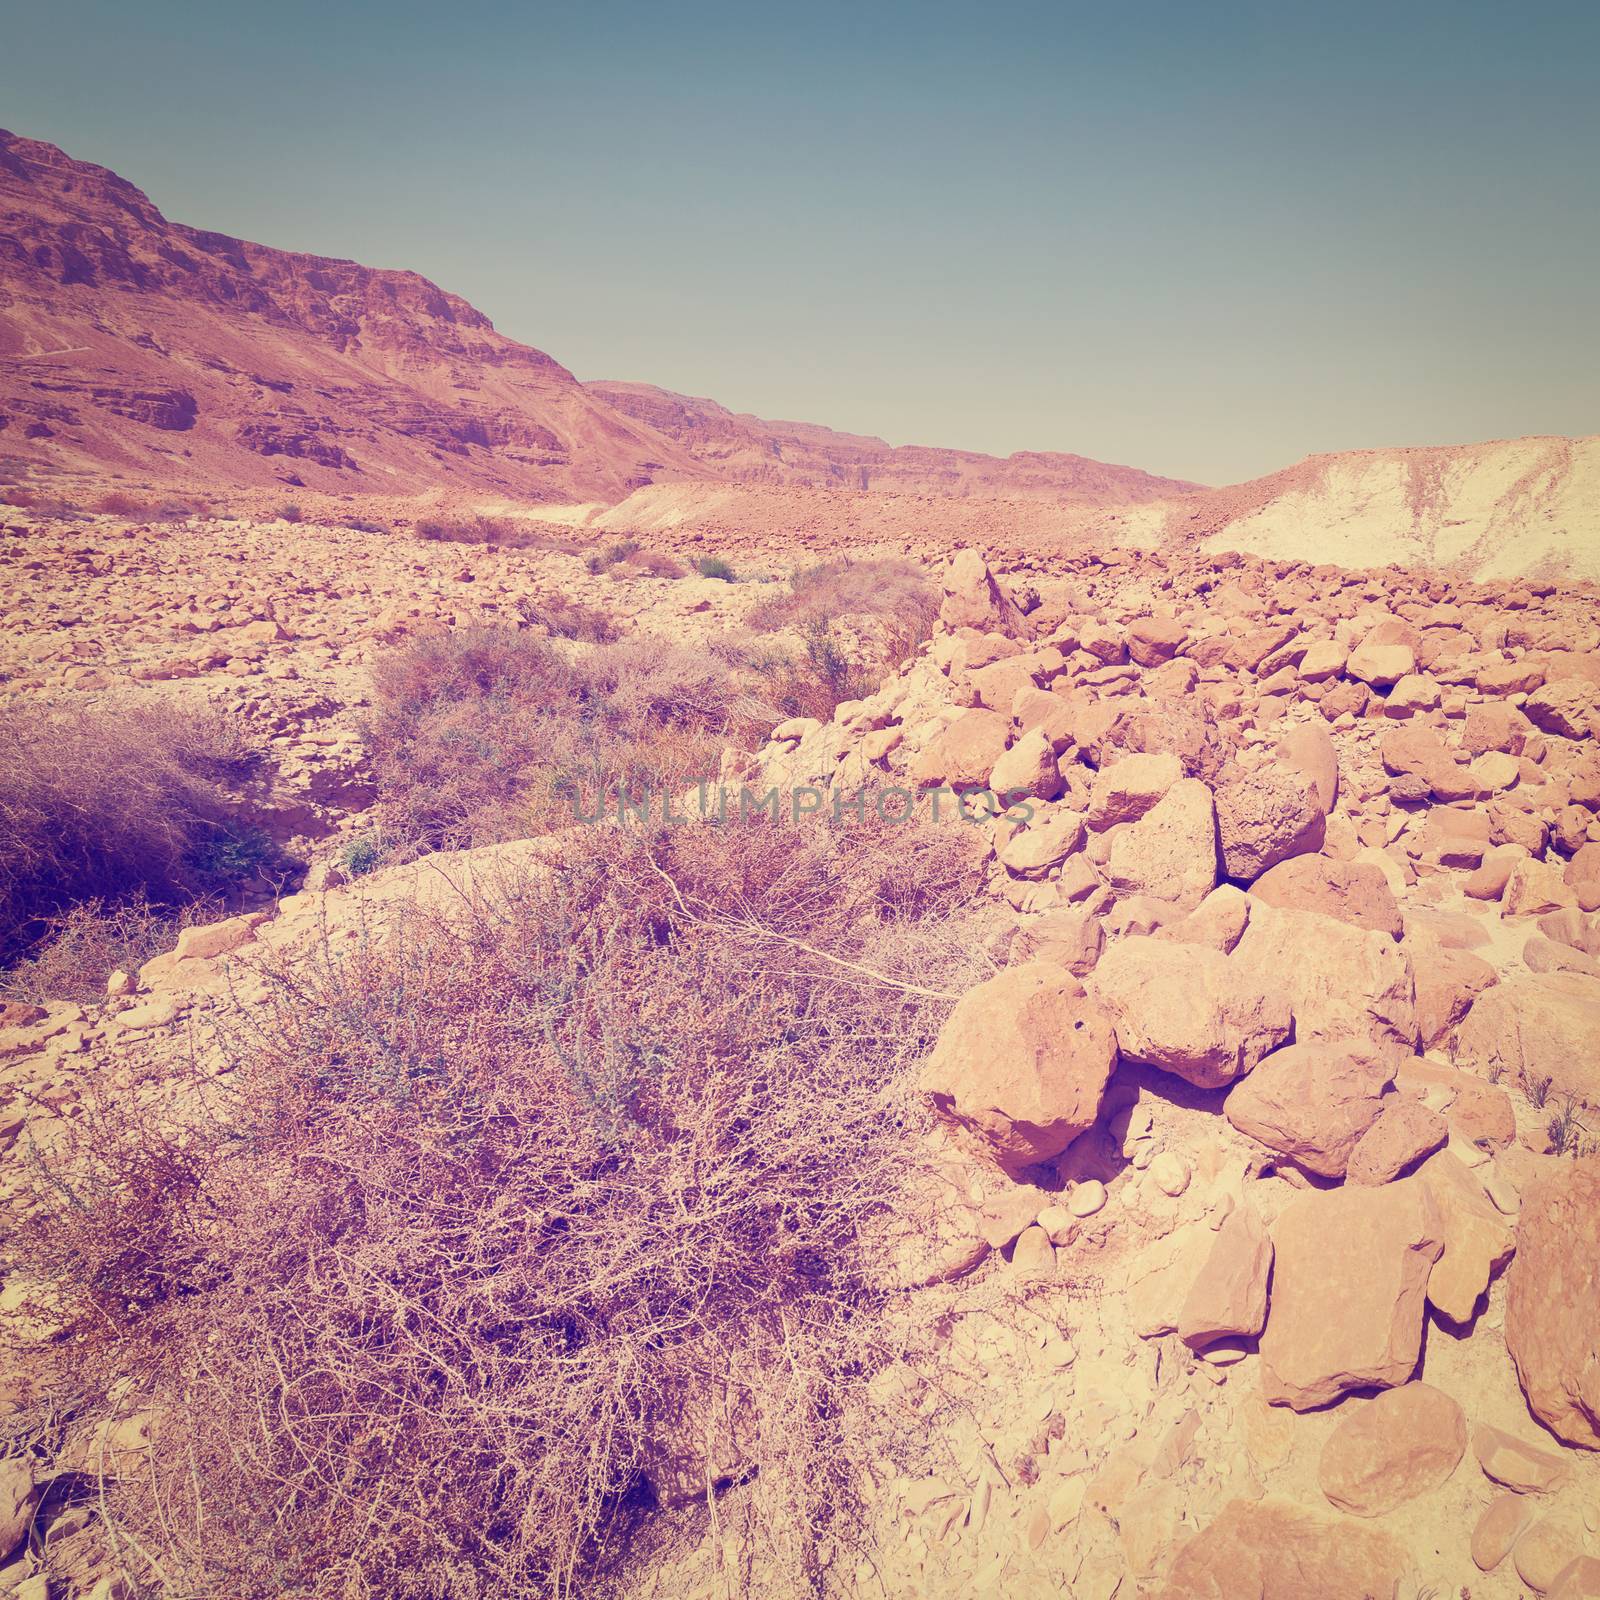 Desert on the West Bank of the Jordan River, Instagram Effect